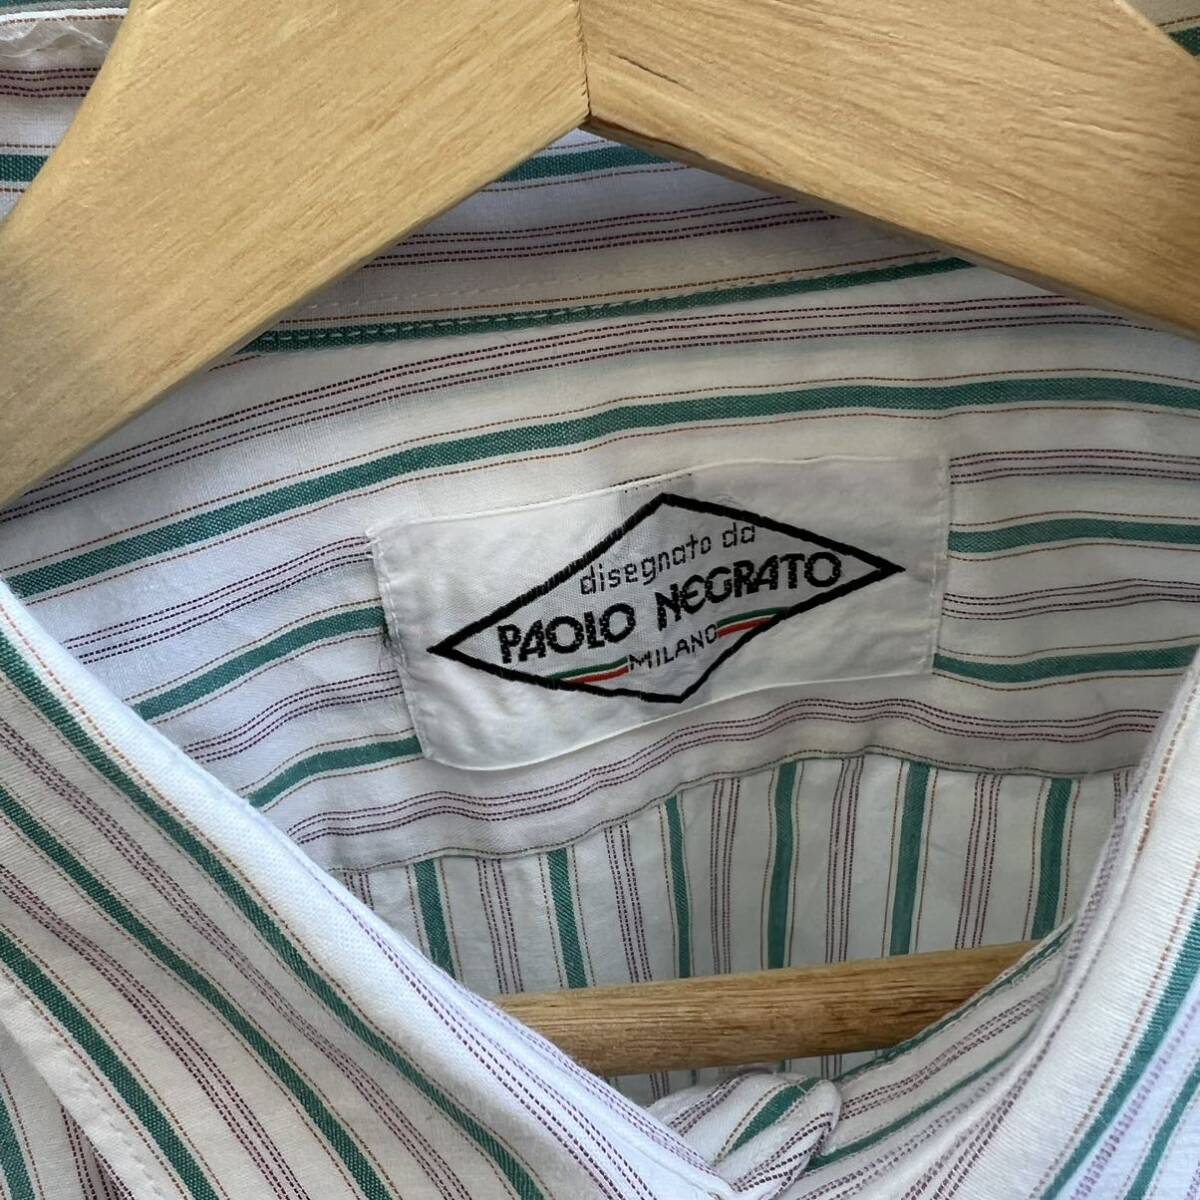 USED ユーロ古着 ストライプ柄 長袖シャツ 薄手 PAOLO NEGRATO イタリア euro vintage ヴィンテージ ストライプシャツ ドレスシャツ_画像7